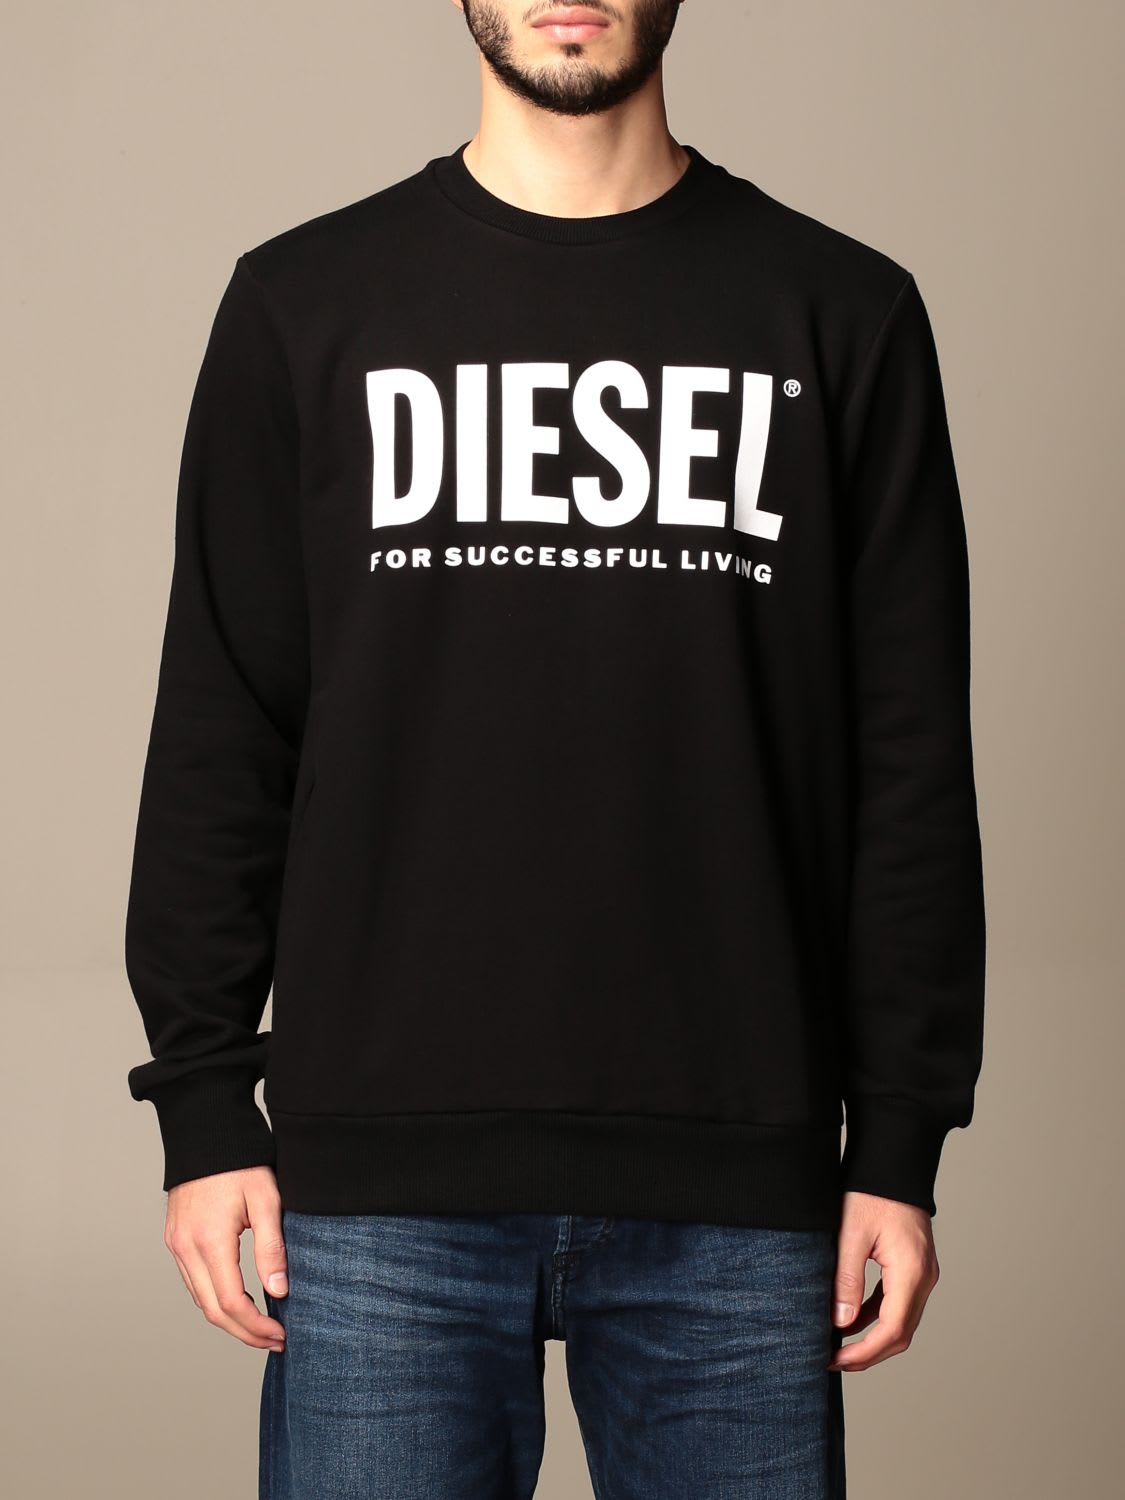 Diesel Sweatshirt Diesel Crewneck Sweatshirt With Logo